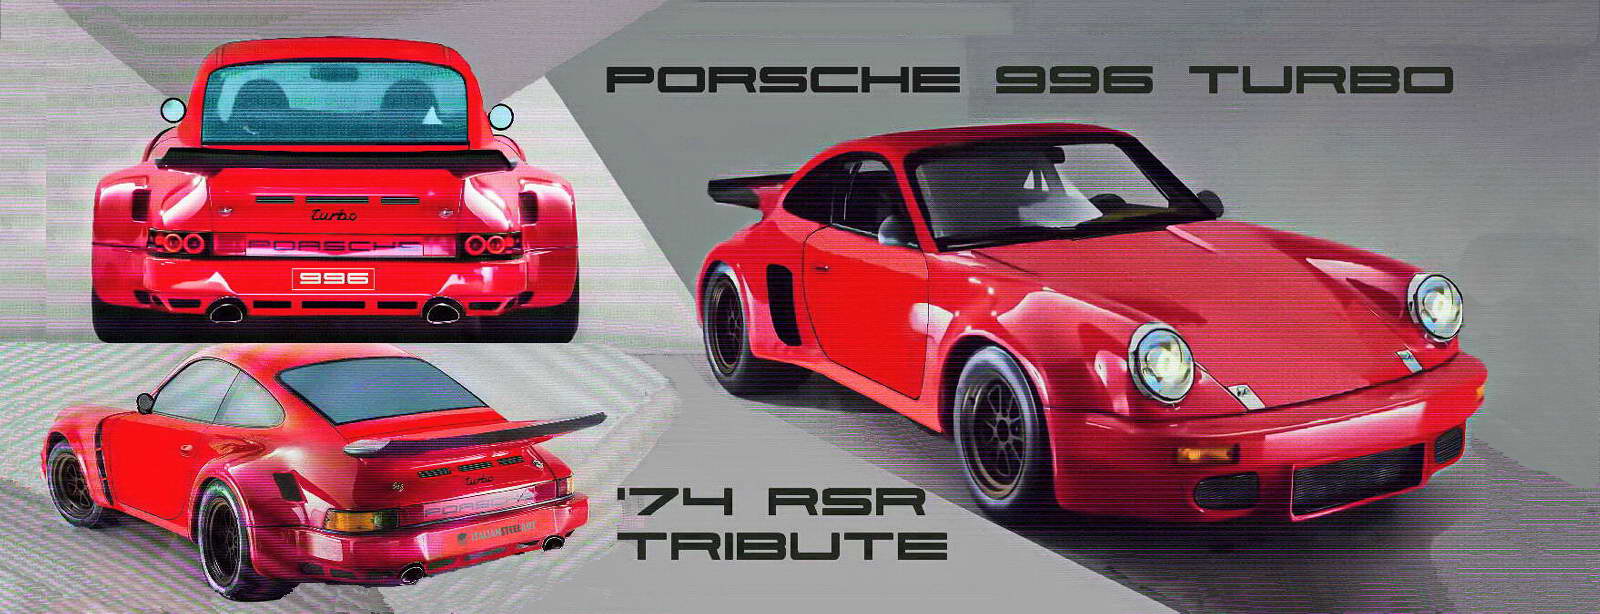 Porsche 996 Turbo RSR tribute 1